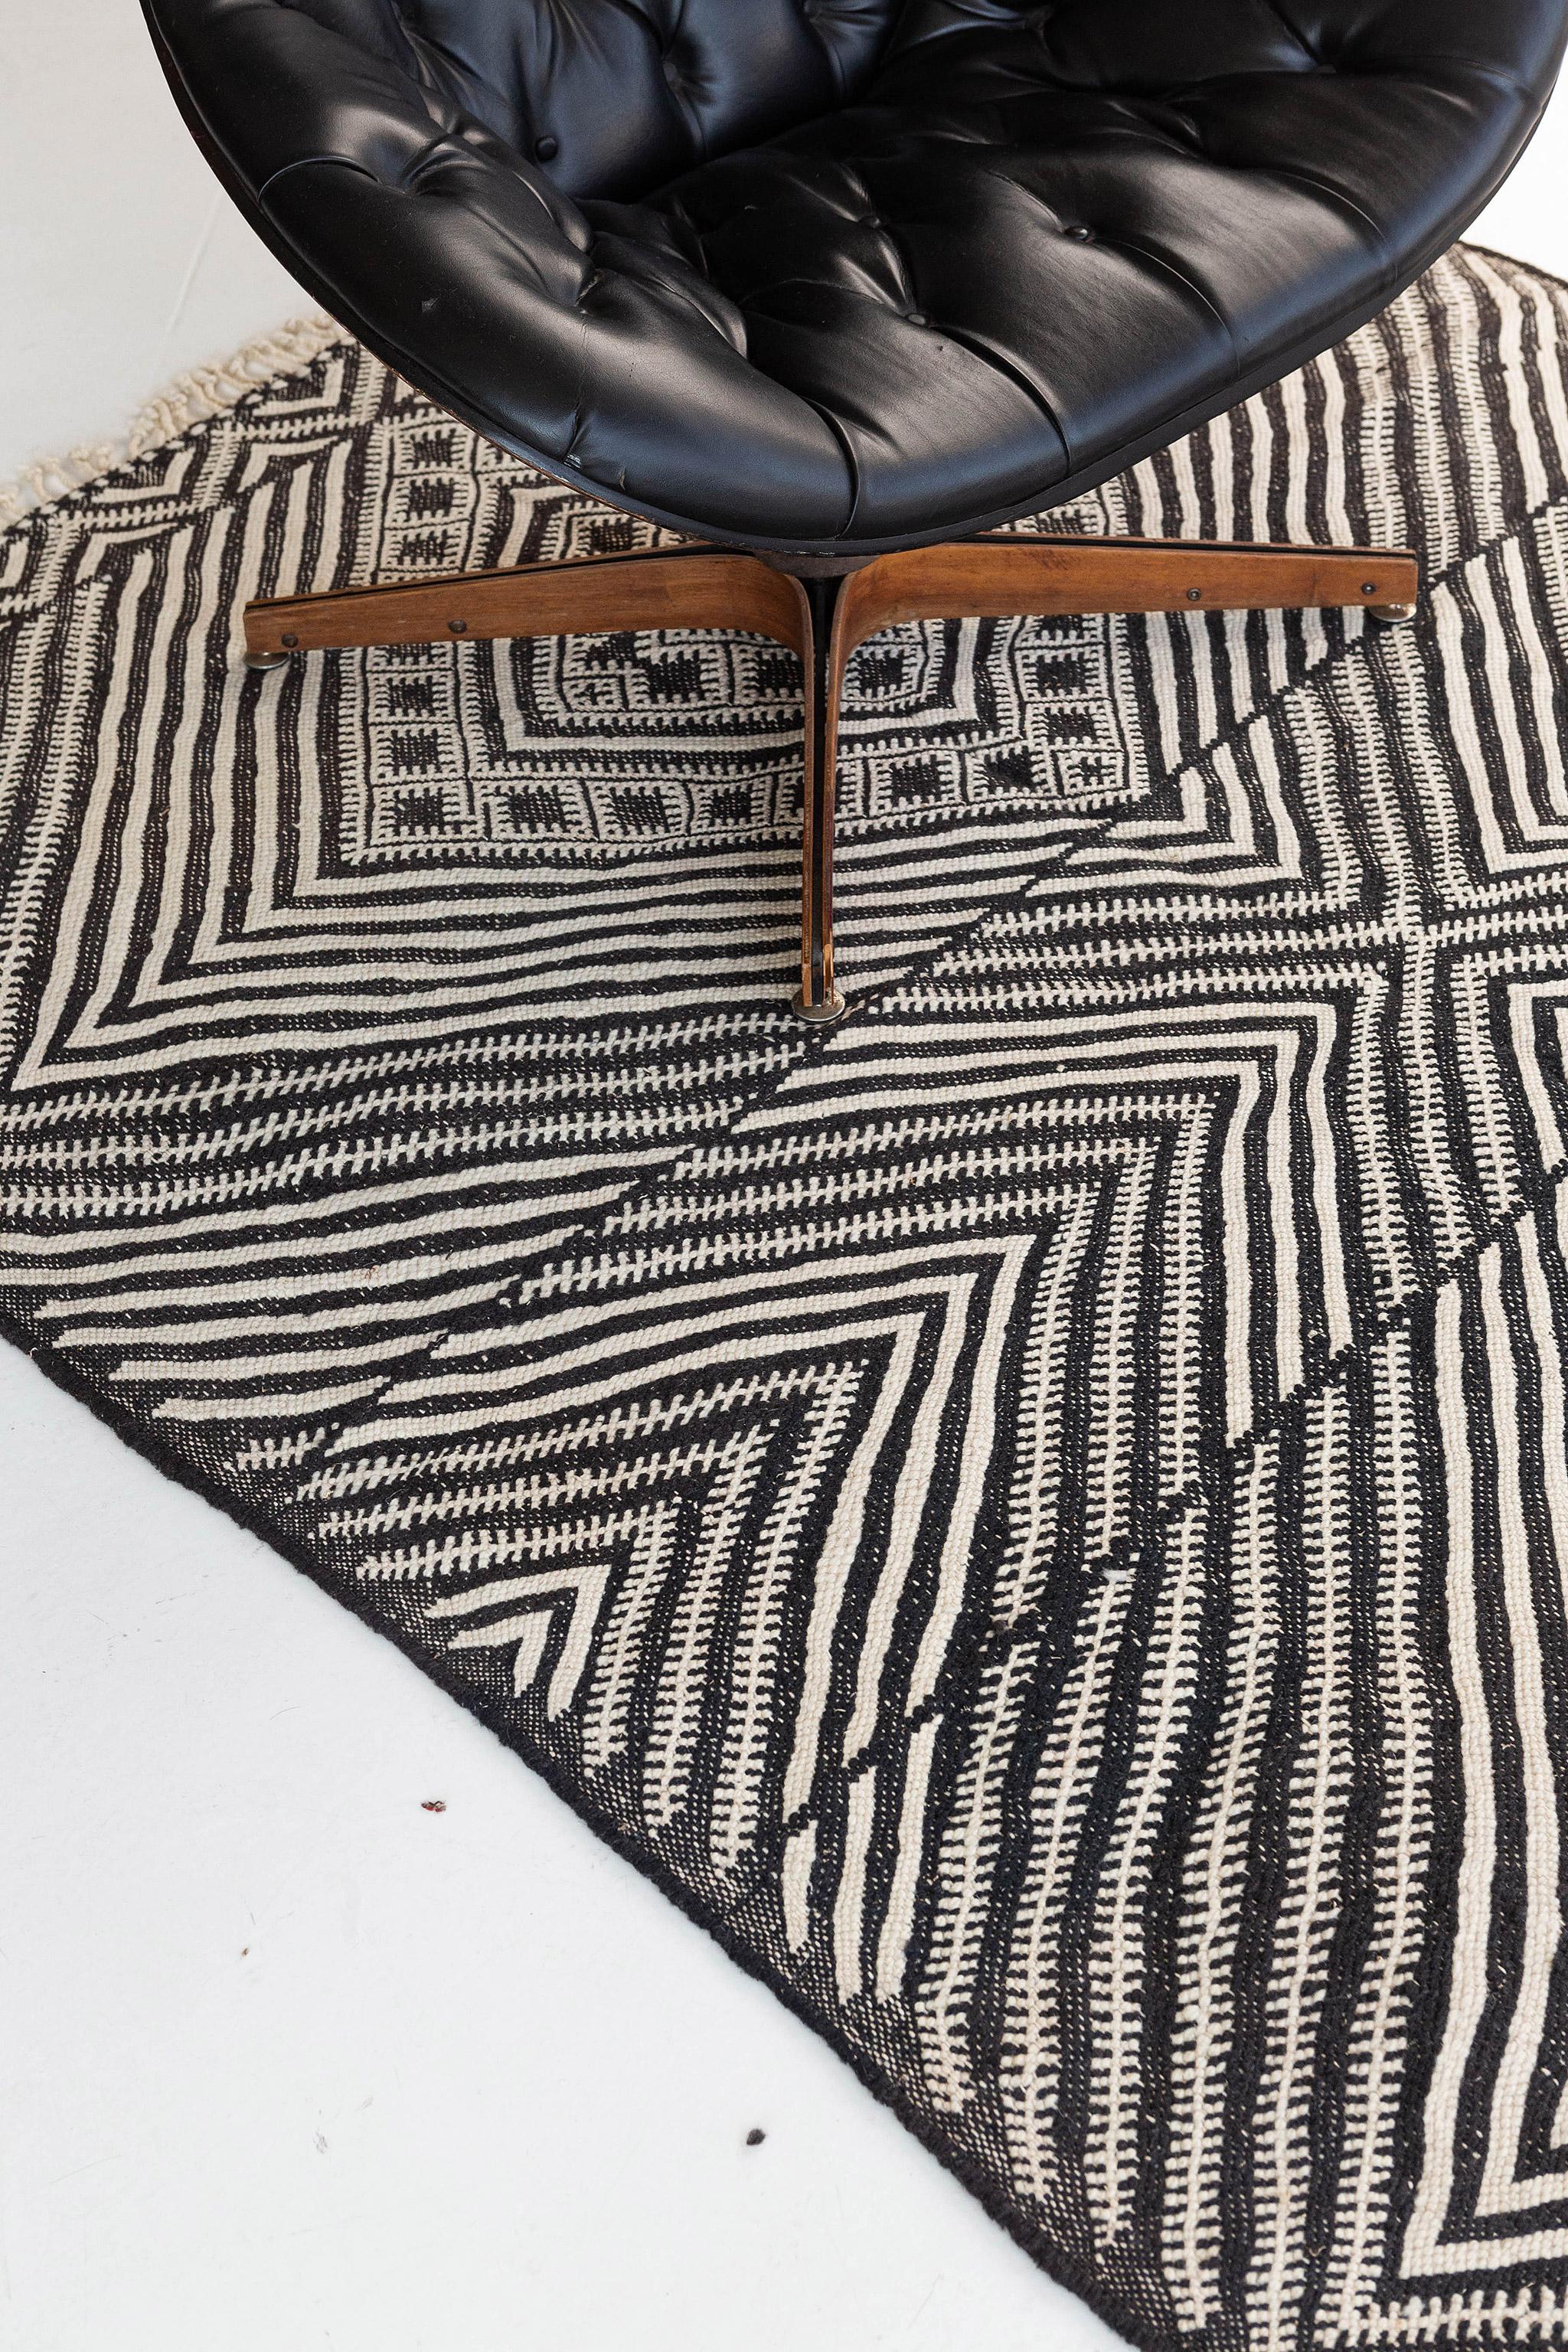 Dieser marokkanische Kilim-Teppich mit seinem atemberaubenden Rautenmuster verleiht dem Raum eine warme, entspannte Struktur und einen subtilen grafischen Reiz. Das abgeschliffene Feld ist mit Rebhuhnaugen in Rautenoptik überzogen, die sich über die